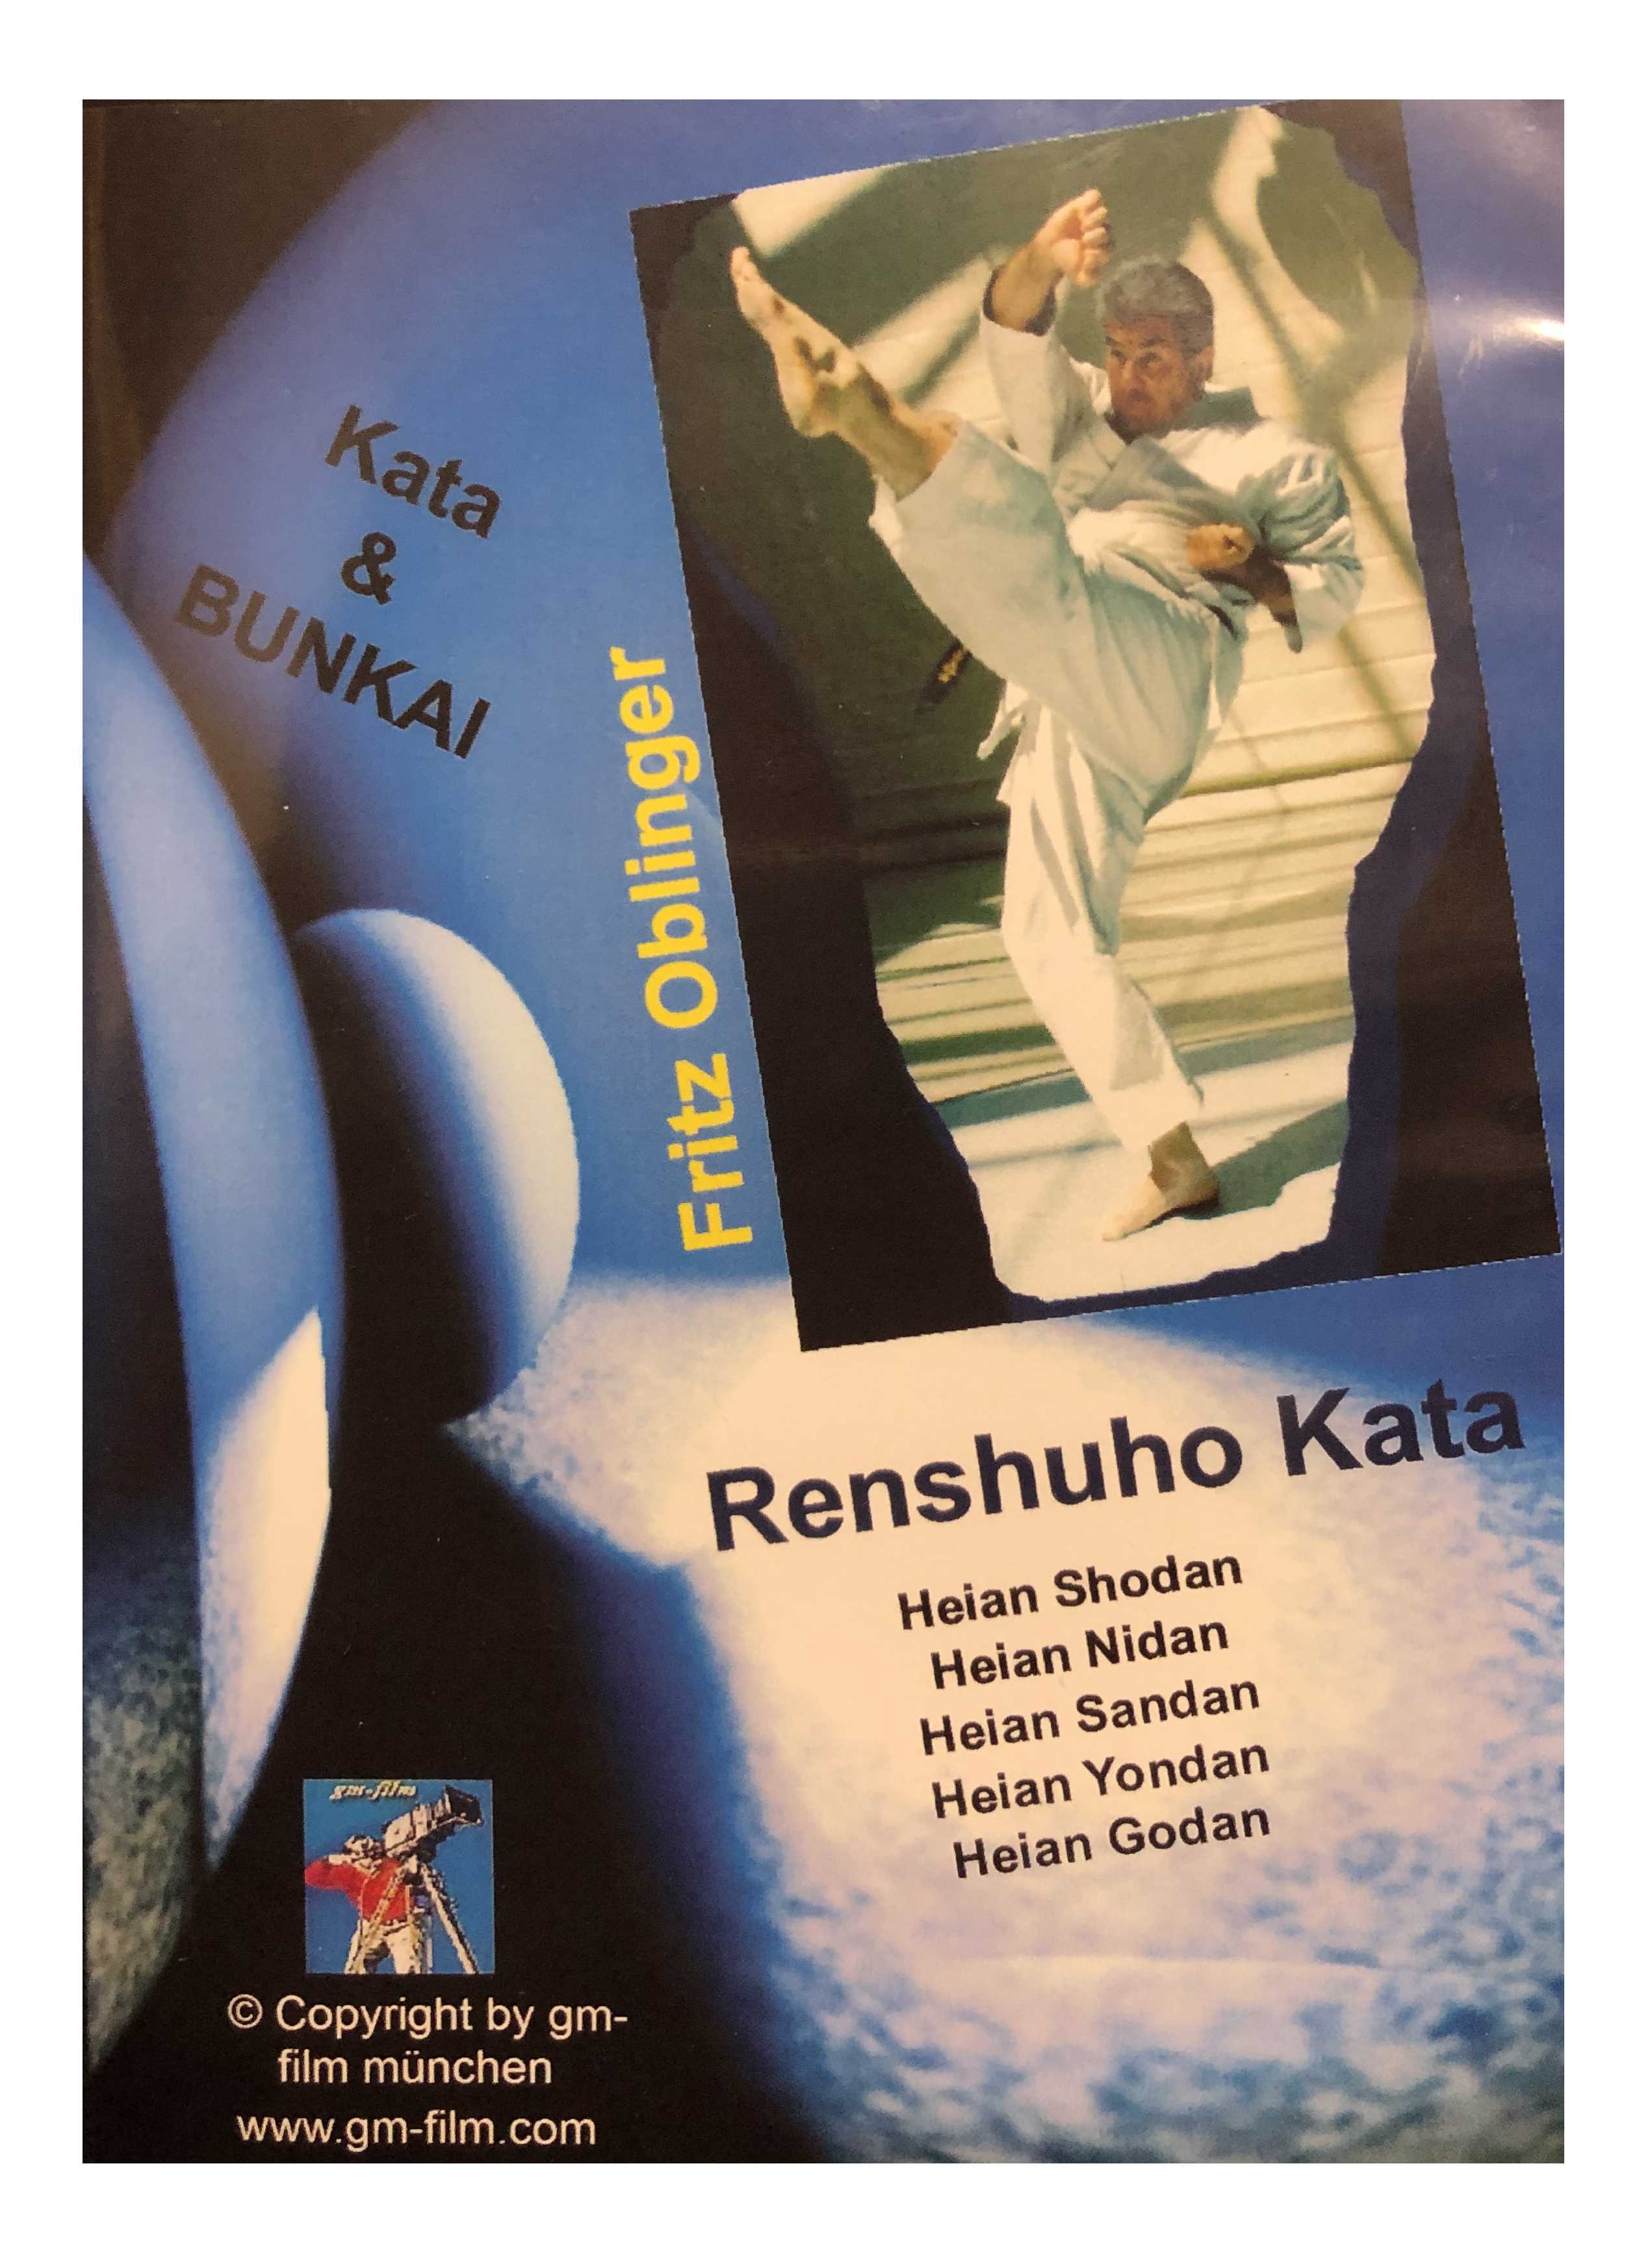 DVD Renshuho Kata & Bunkai